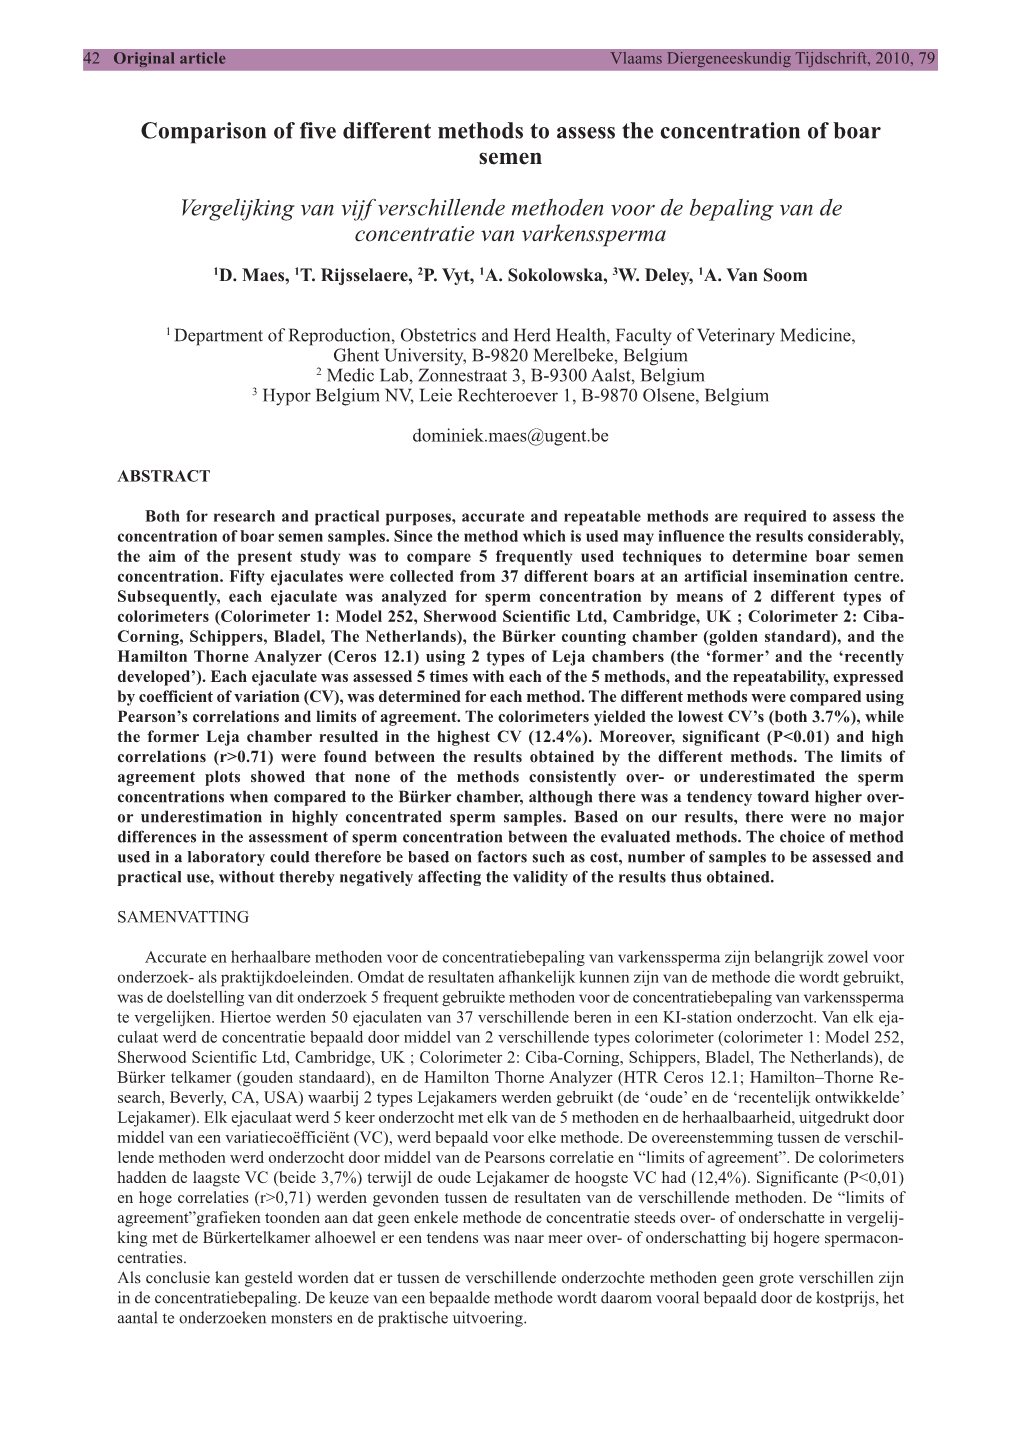 Comparison of Five Different Methods to Assess the Concentration of Boar Semen Vergelijking Van Vijf Verschillende Methoden Voor